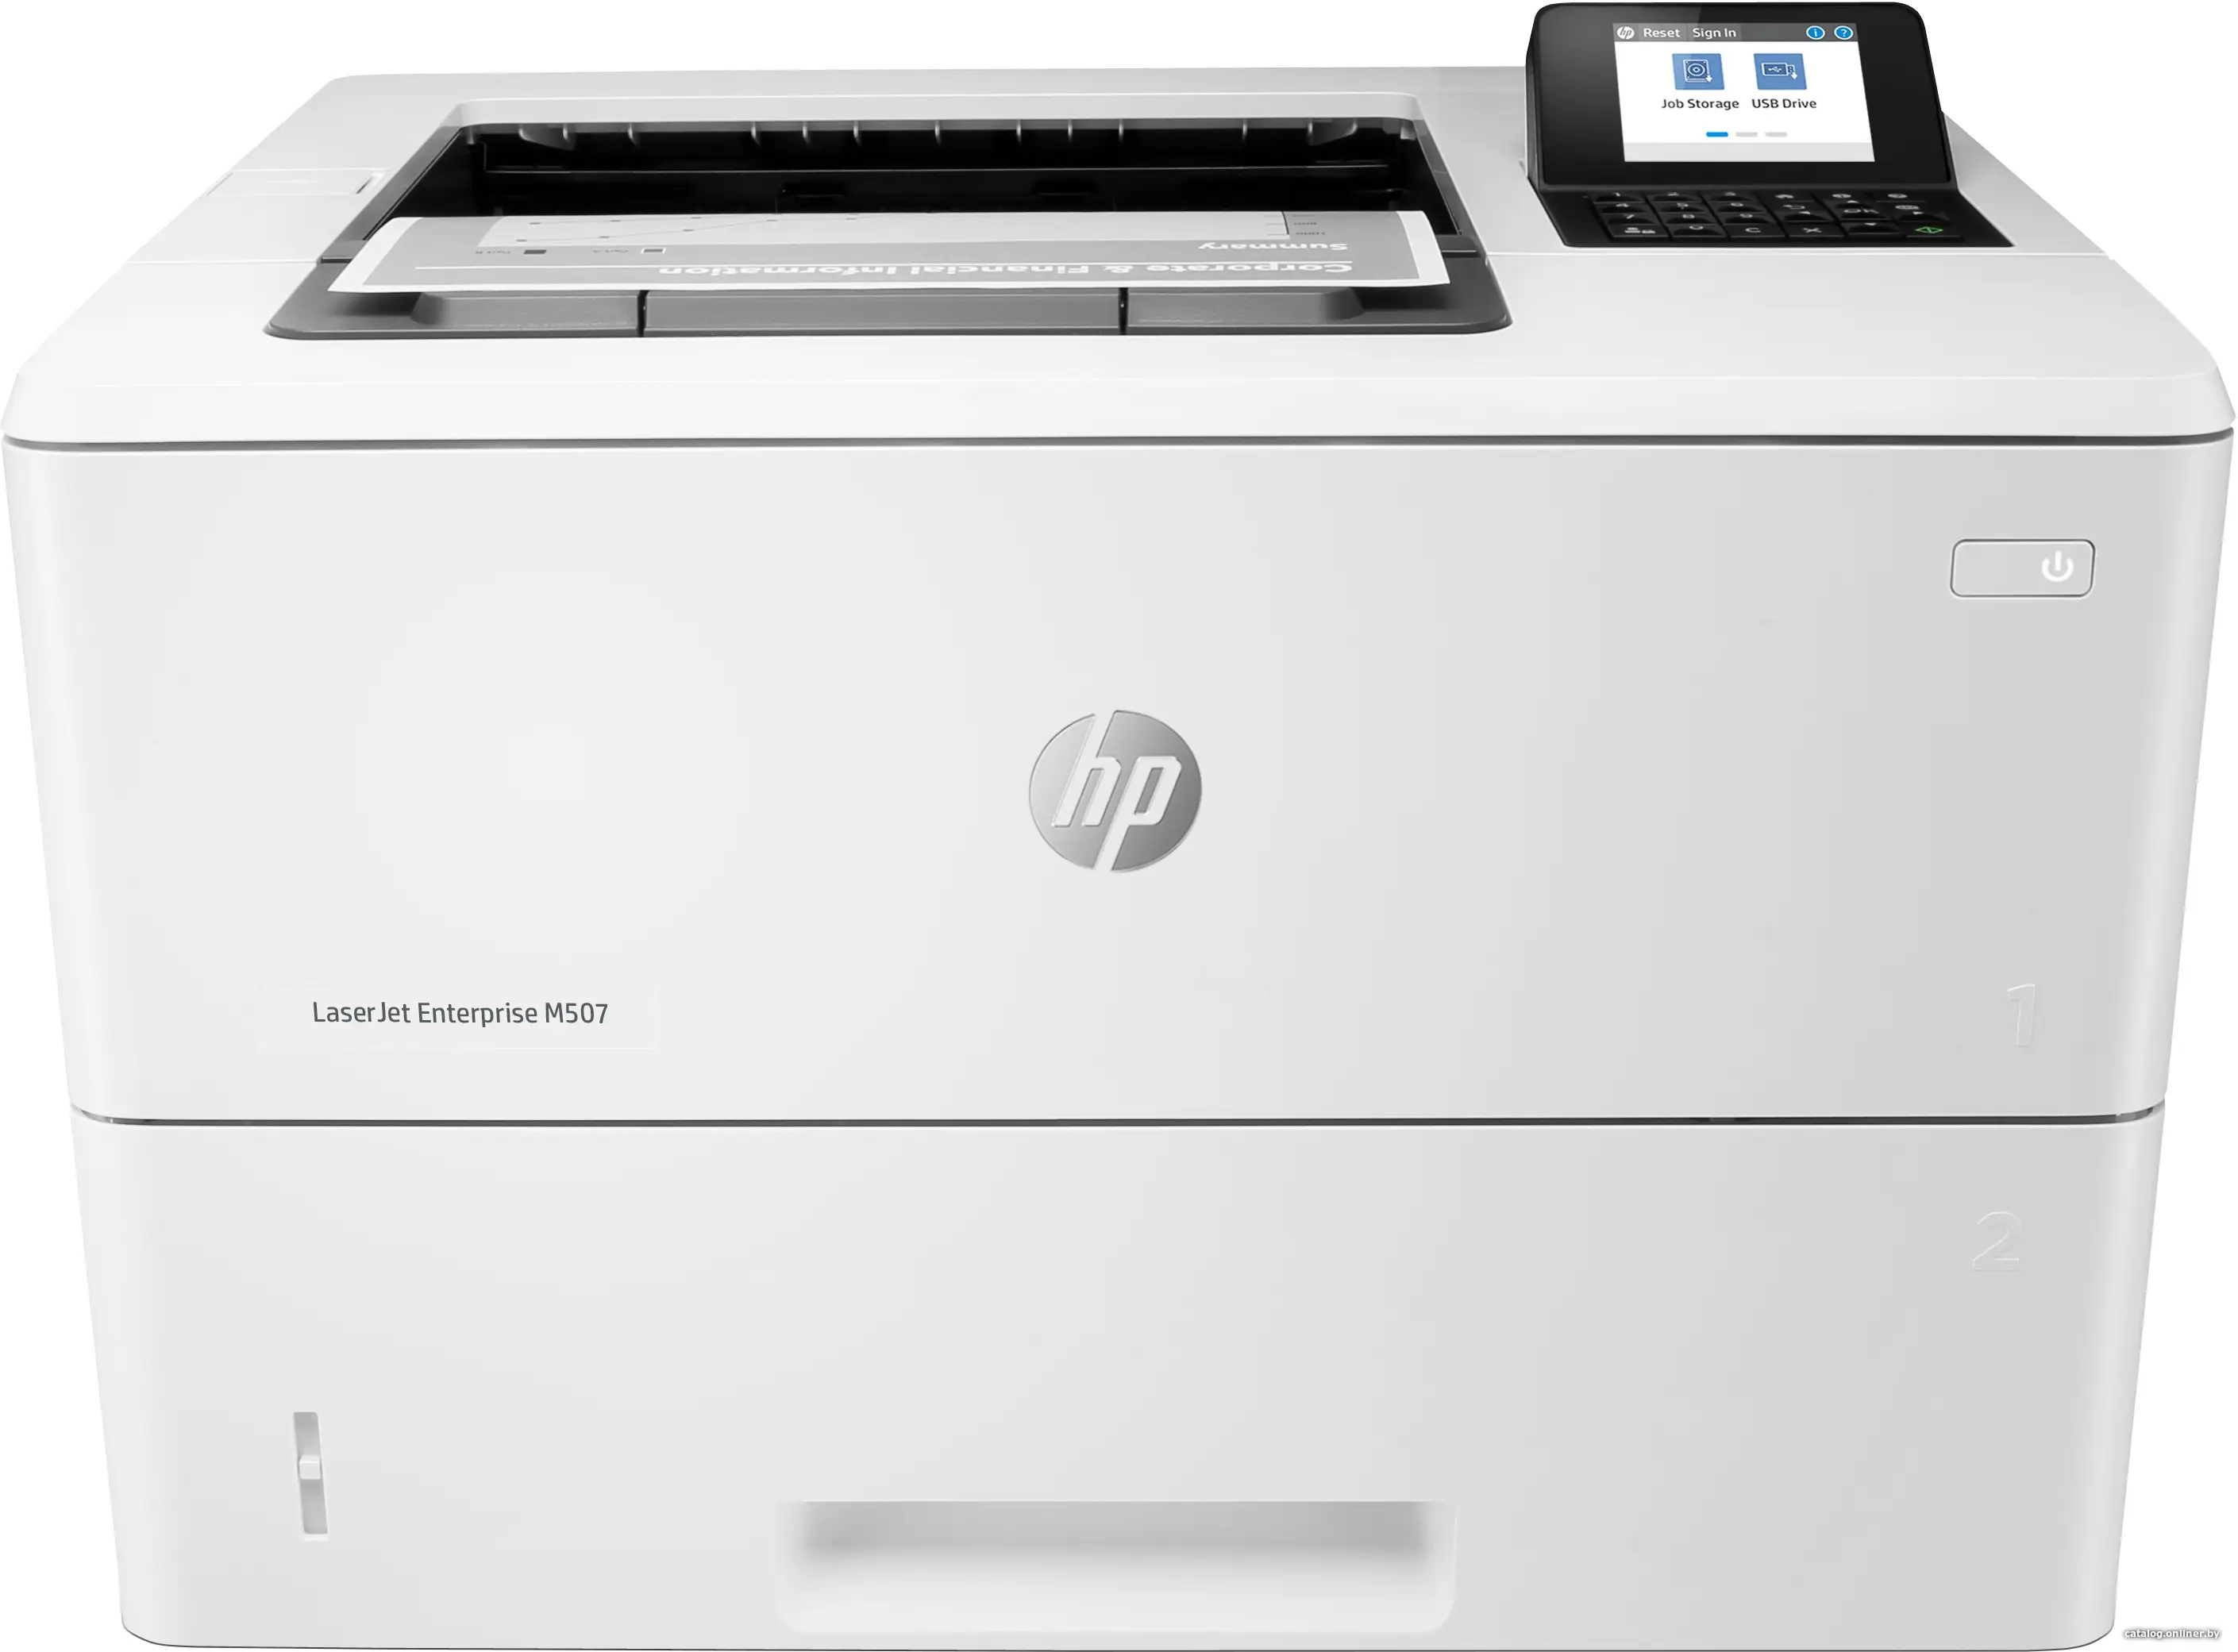 Купить HP LaserJet Enterprise M507dn лазерный принтер, цена, опт и розница